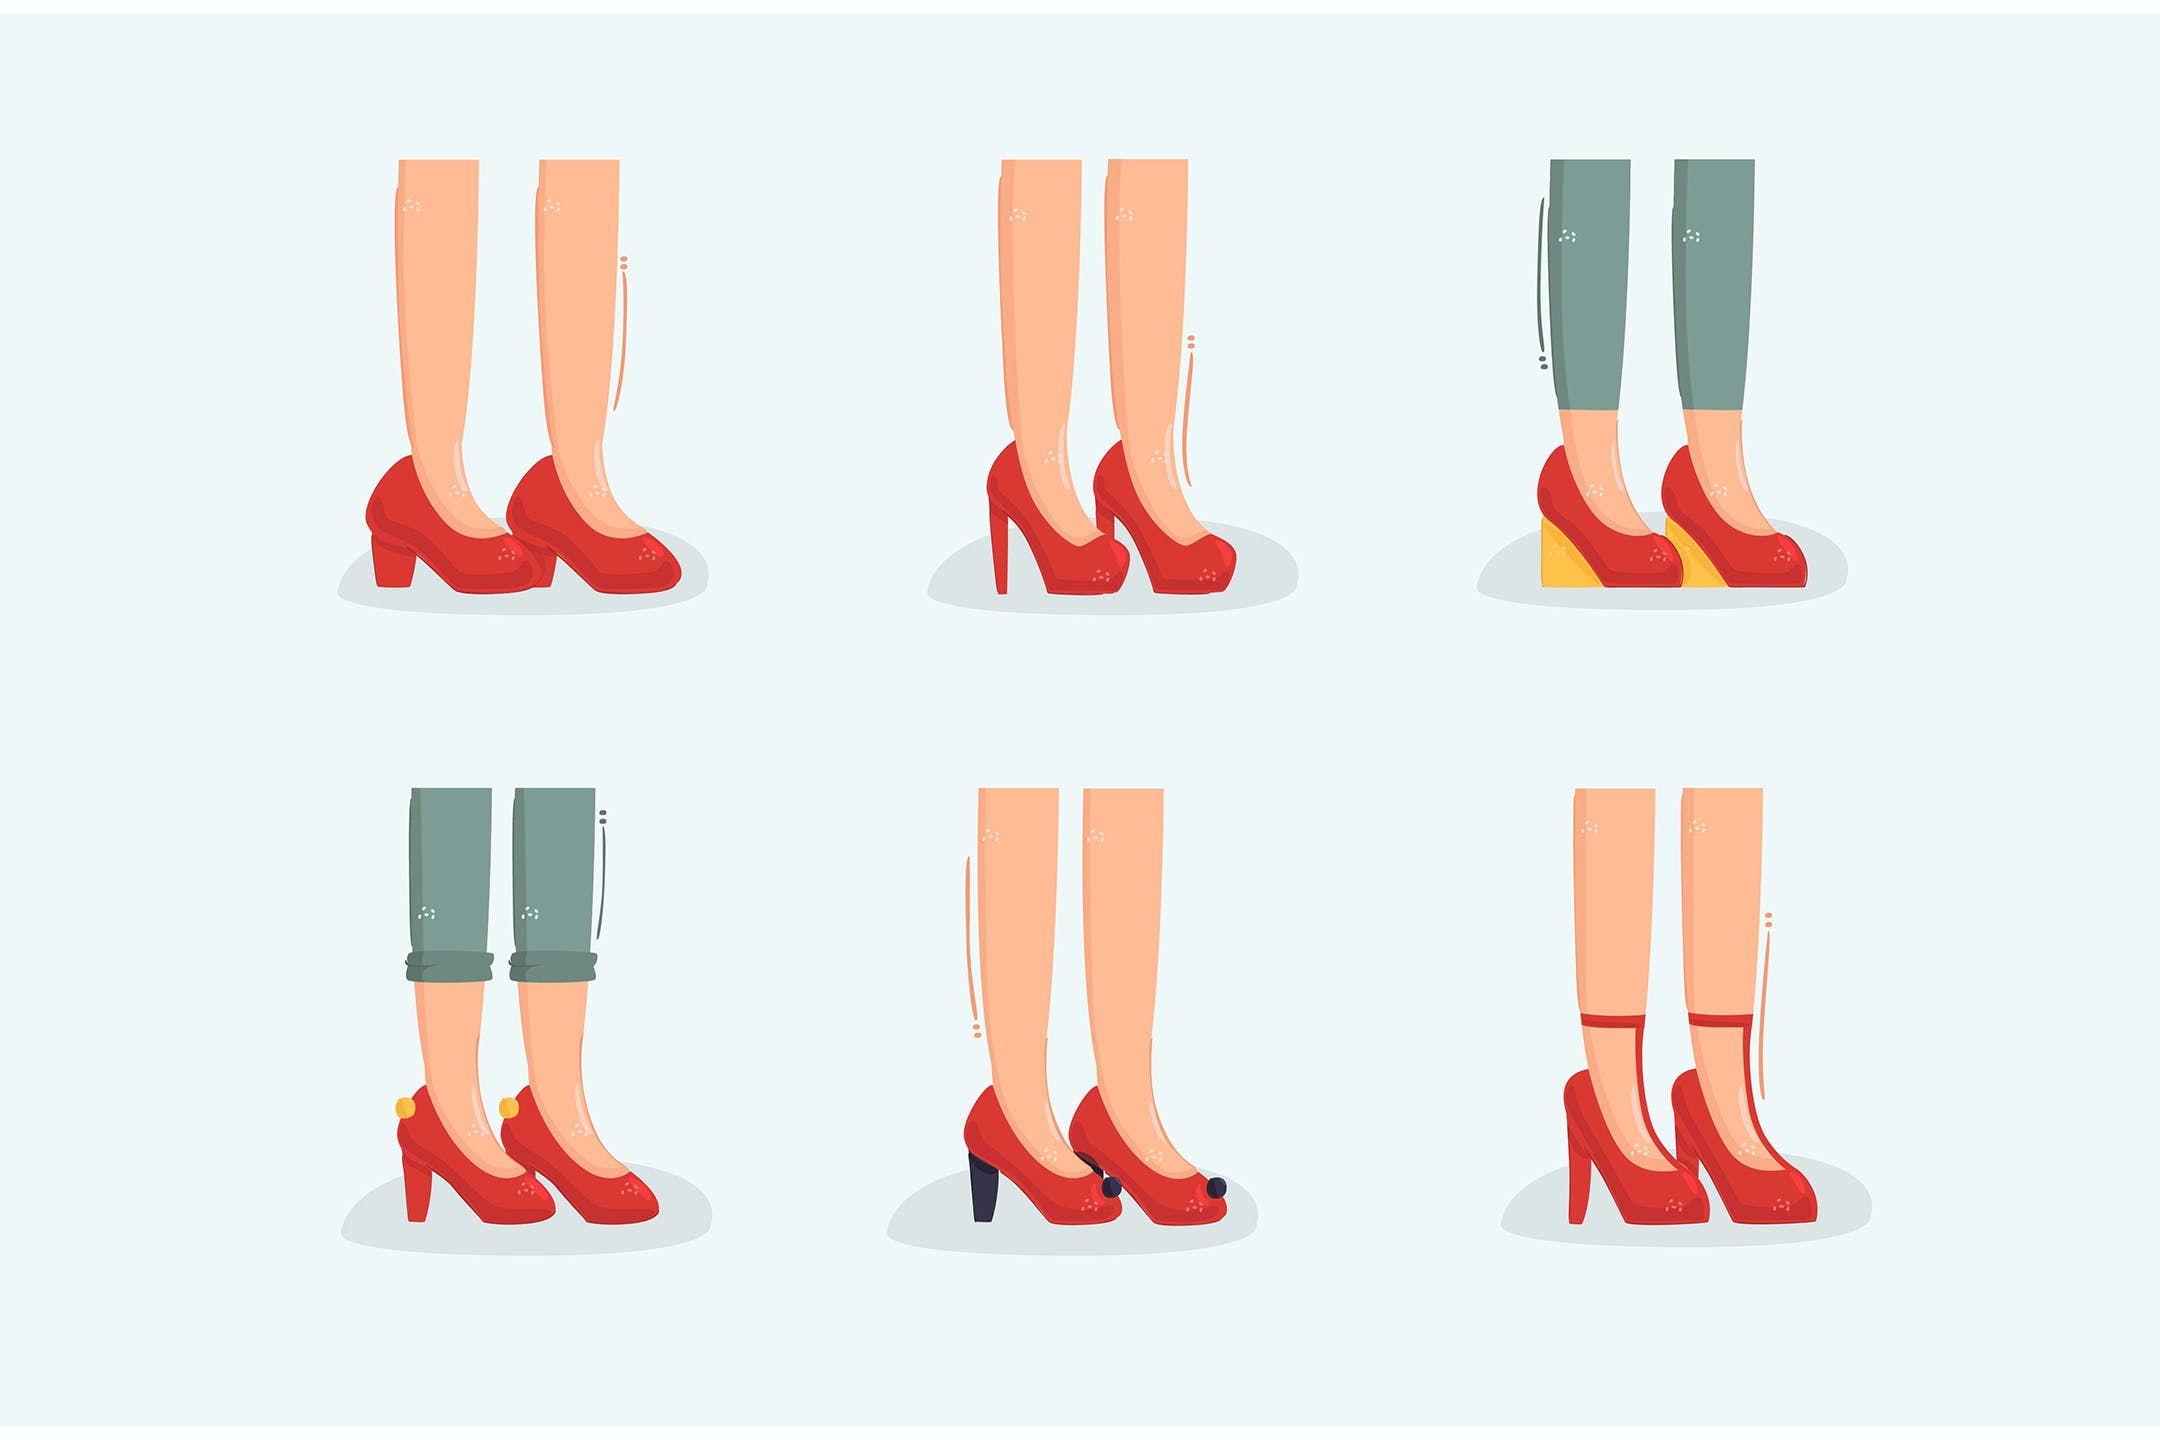 性感大腿高跟鞋矢量插画 Ruby Slippers Illustration 设计素材 第1张